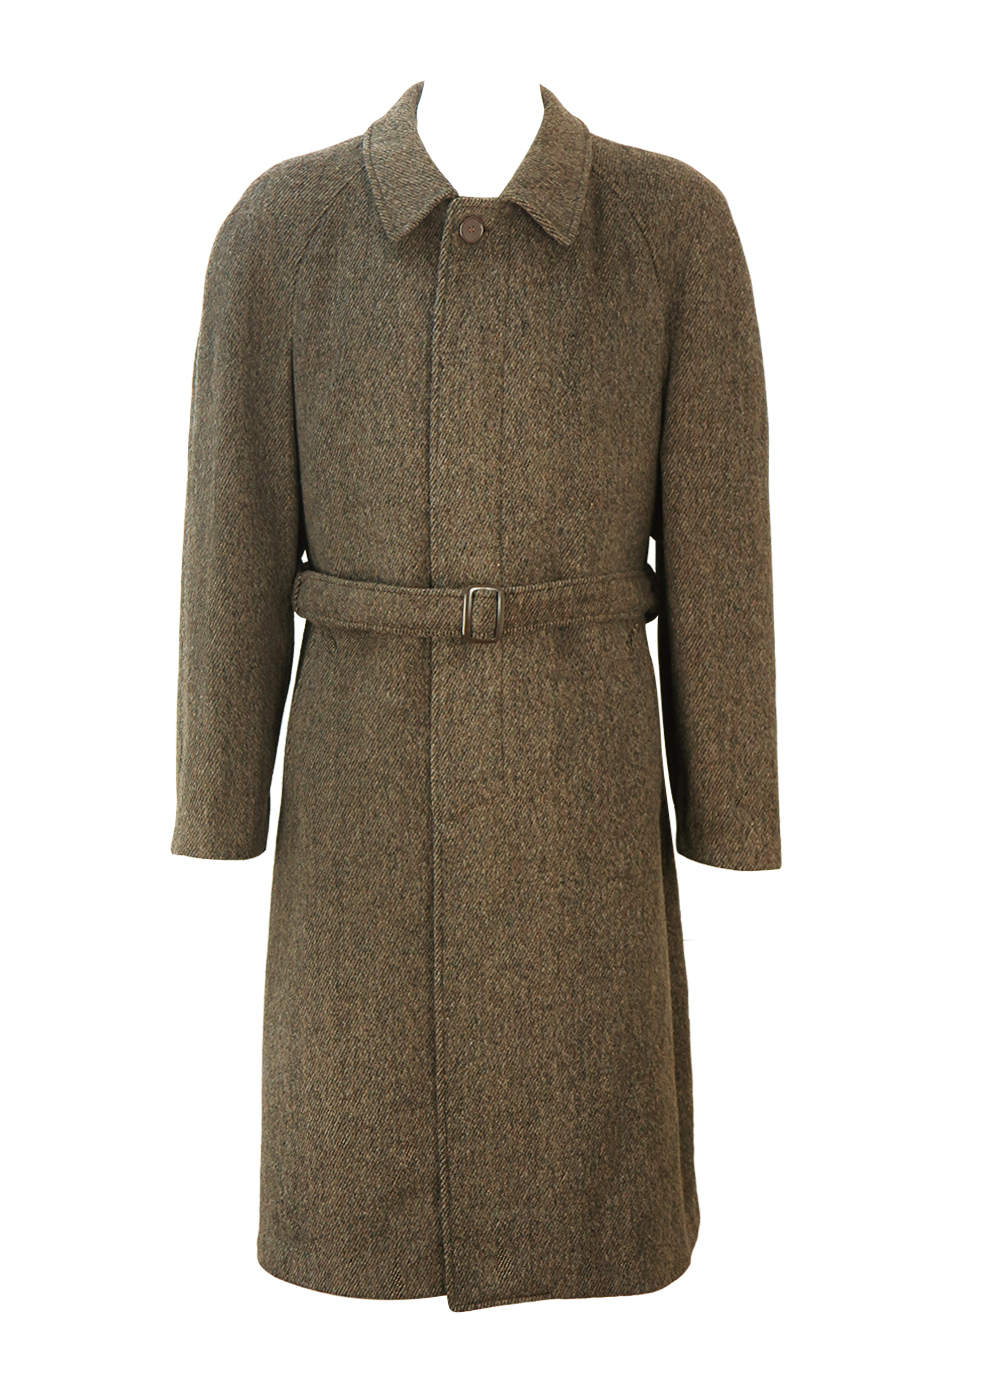 Brown, Grey & Black Single Breasted Tweed Wool Coat with Belt – L/XL ...